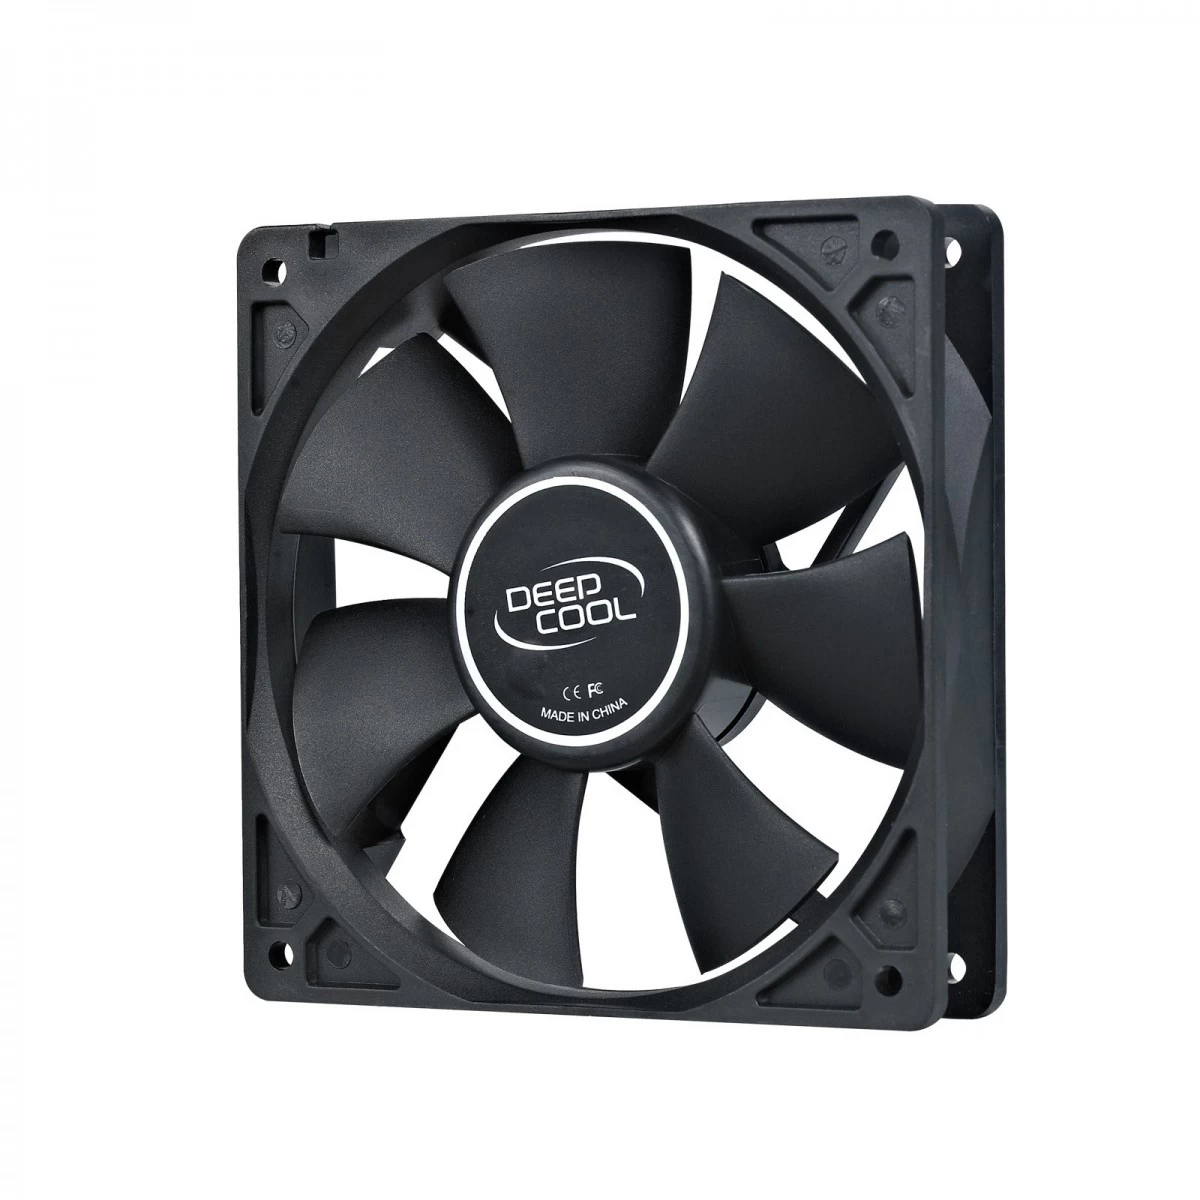 Deepcool XFAN 120 Black Casing Cooling Fan